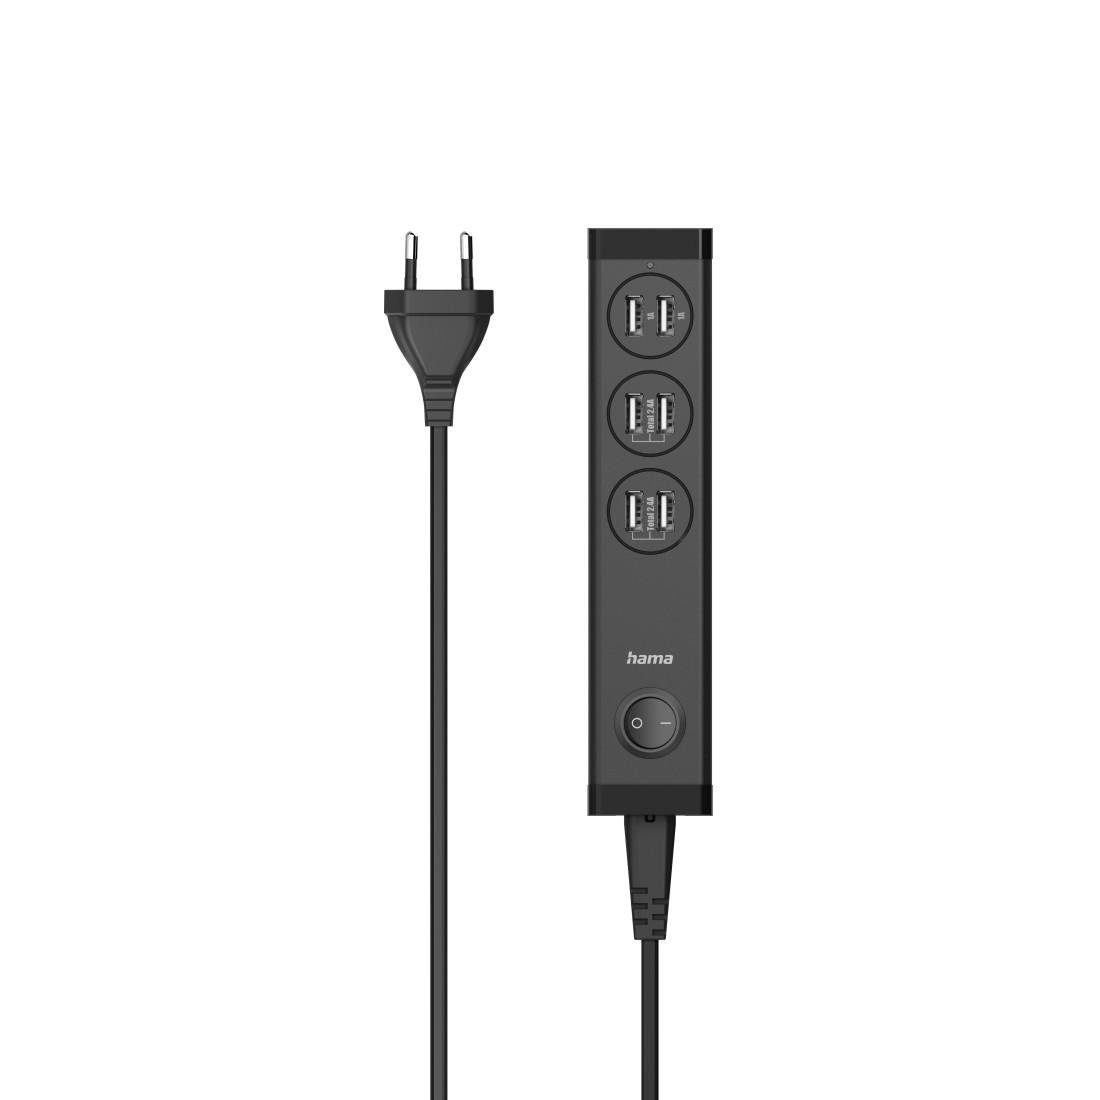 Hama USB-Mehrfach-Ladegerät 6 Ports USB-A für Tablets und Smartphones 34W  USB-Ladegerät, Max. Ausgangsleistung: 34 Watt 2 x 5 Watt + 2 x 12 Watt oder  4 x 6 Watt